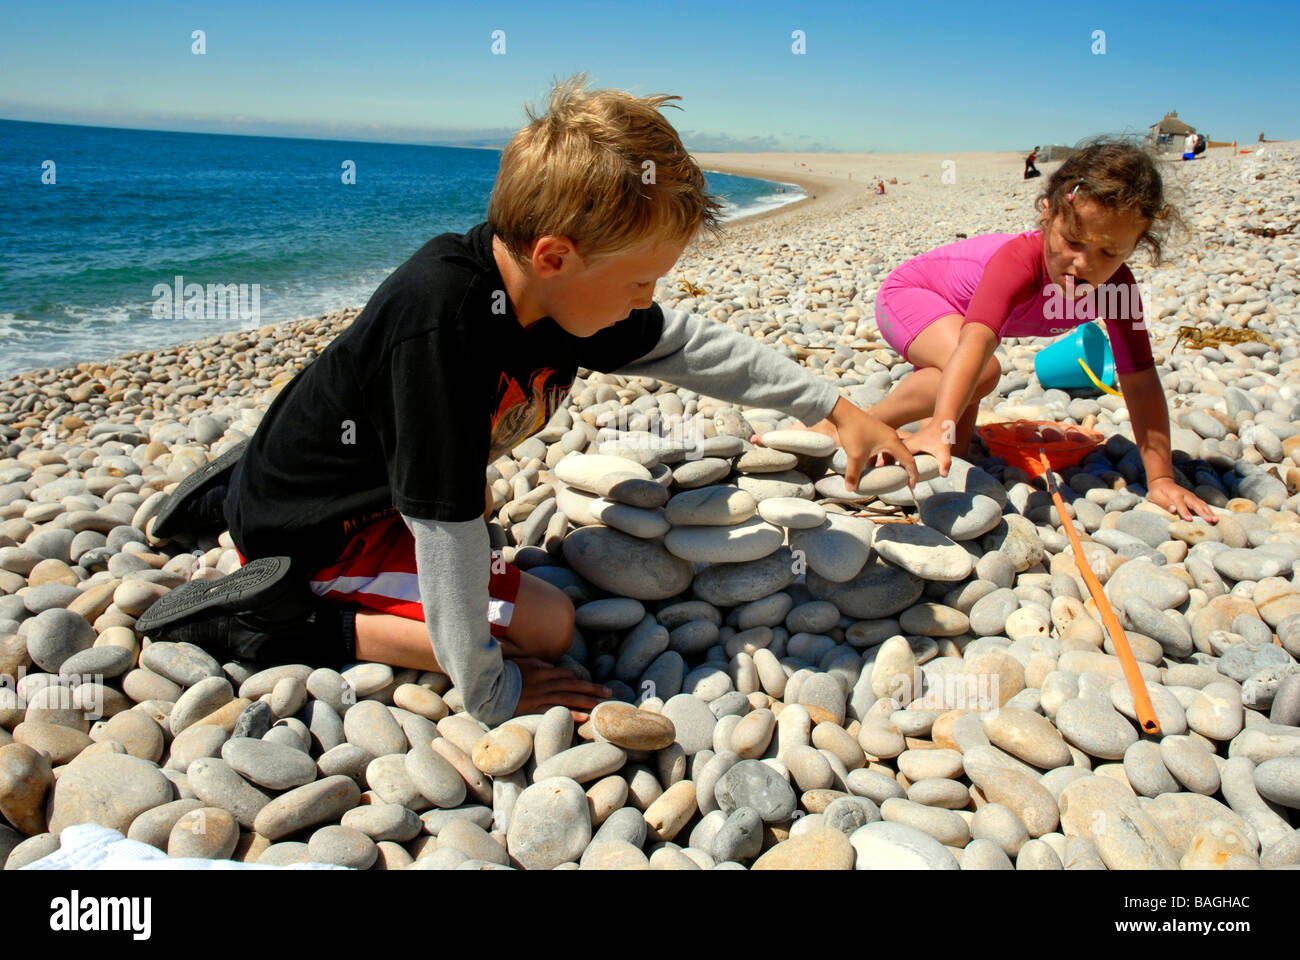 Les enfants jouent sur la plage de Chesil, Dorset, Angleterre, Royaume-Uni Banque D'Images